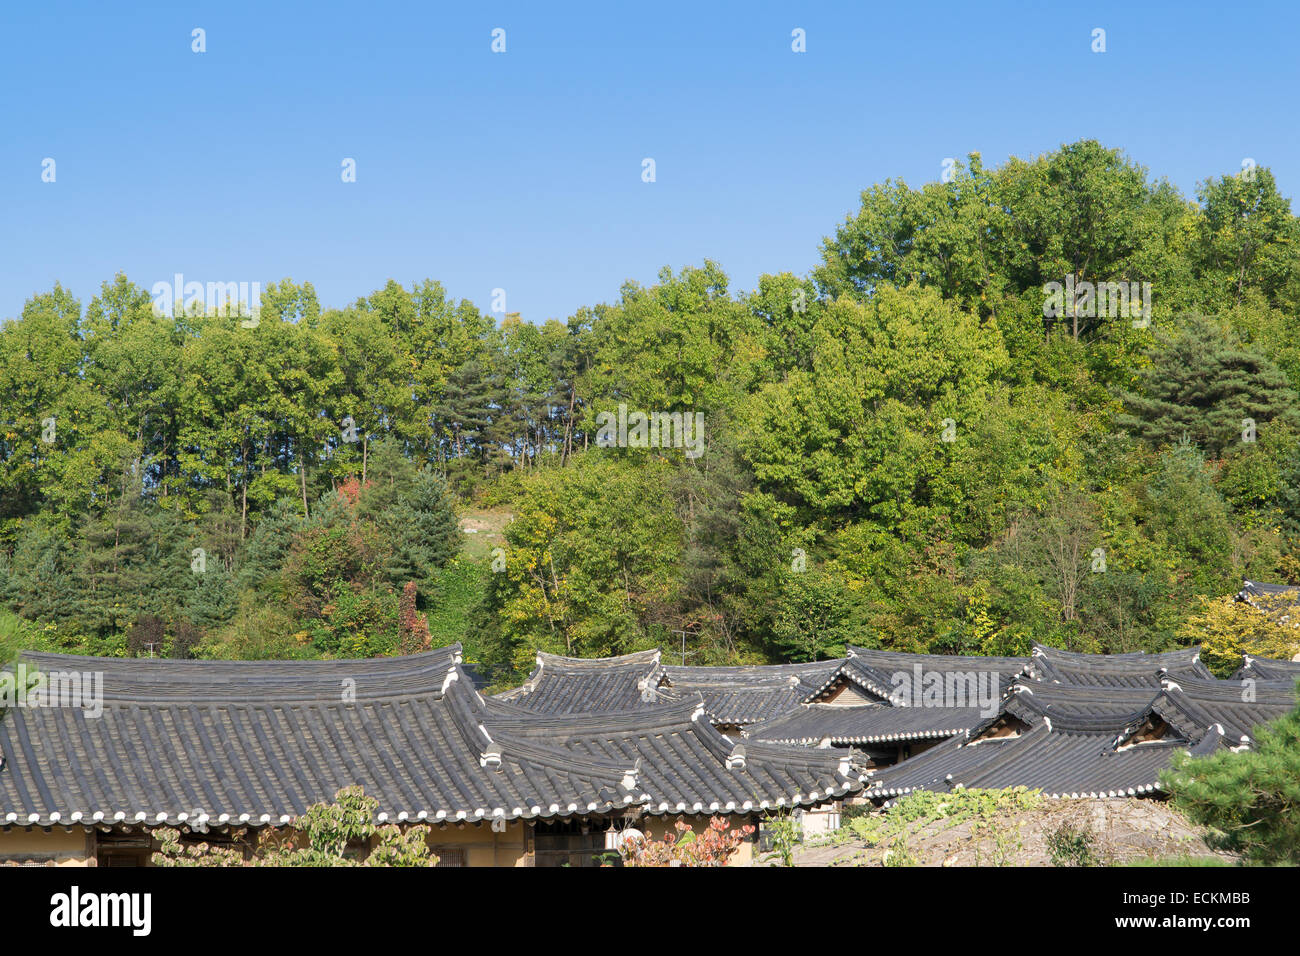 Ziegeldach der koreanischen traditionellen Architektur in einem Dorf Stockfoto